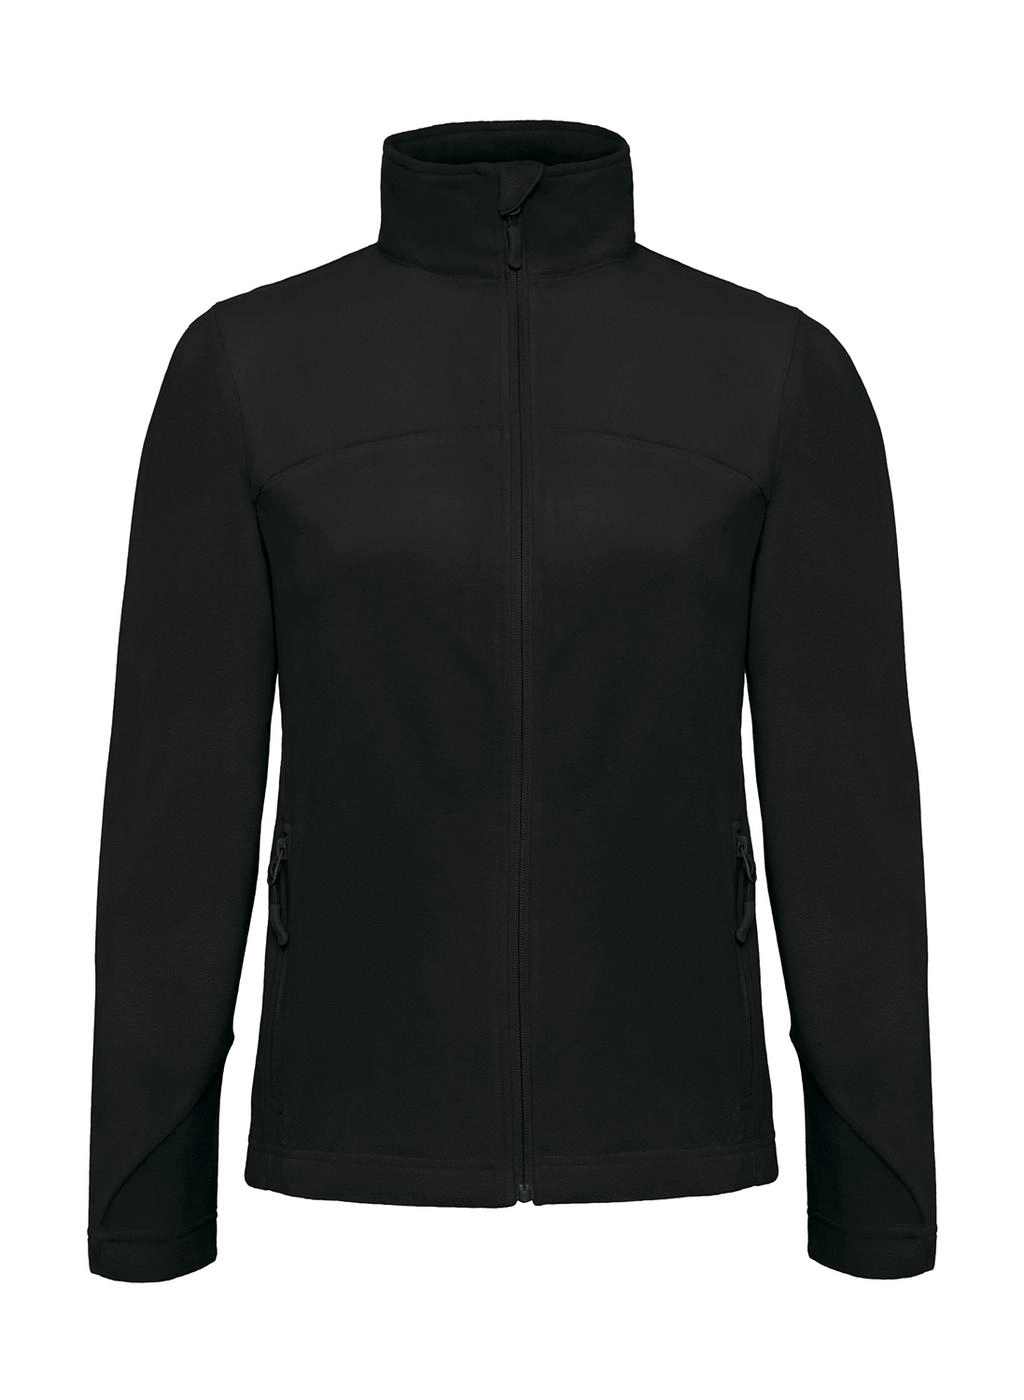 Coolstar/women Fleece Full Zip zum Besticken und Bedrucken in der Farbe Black mit Ihren Logo, Schriftzug oder Motiv.